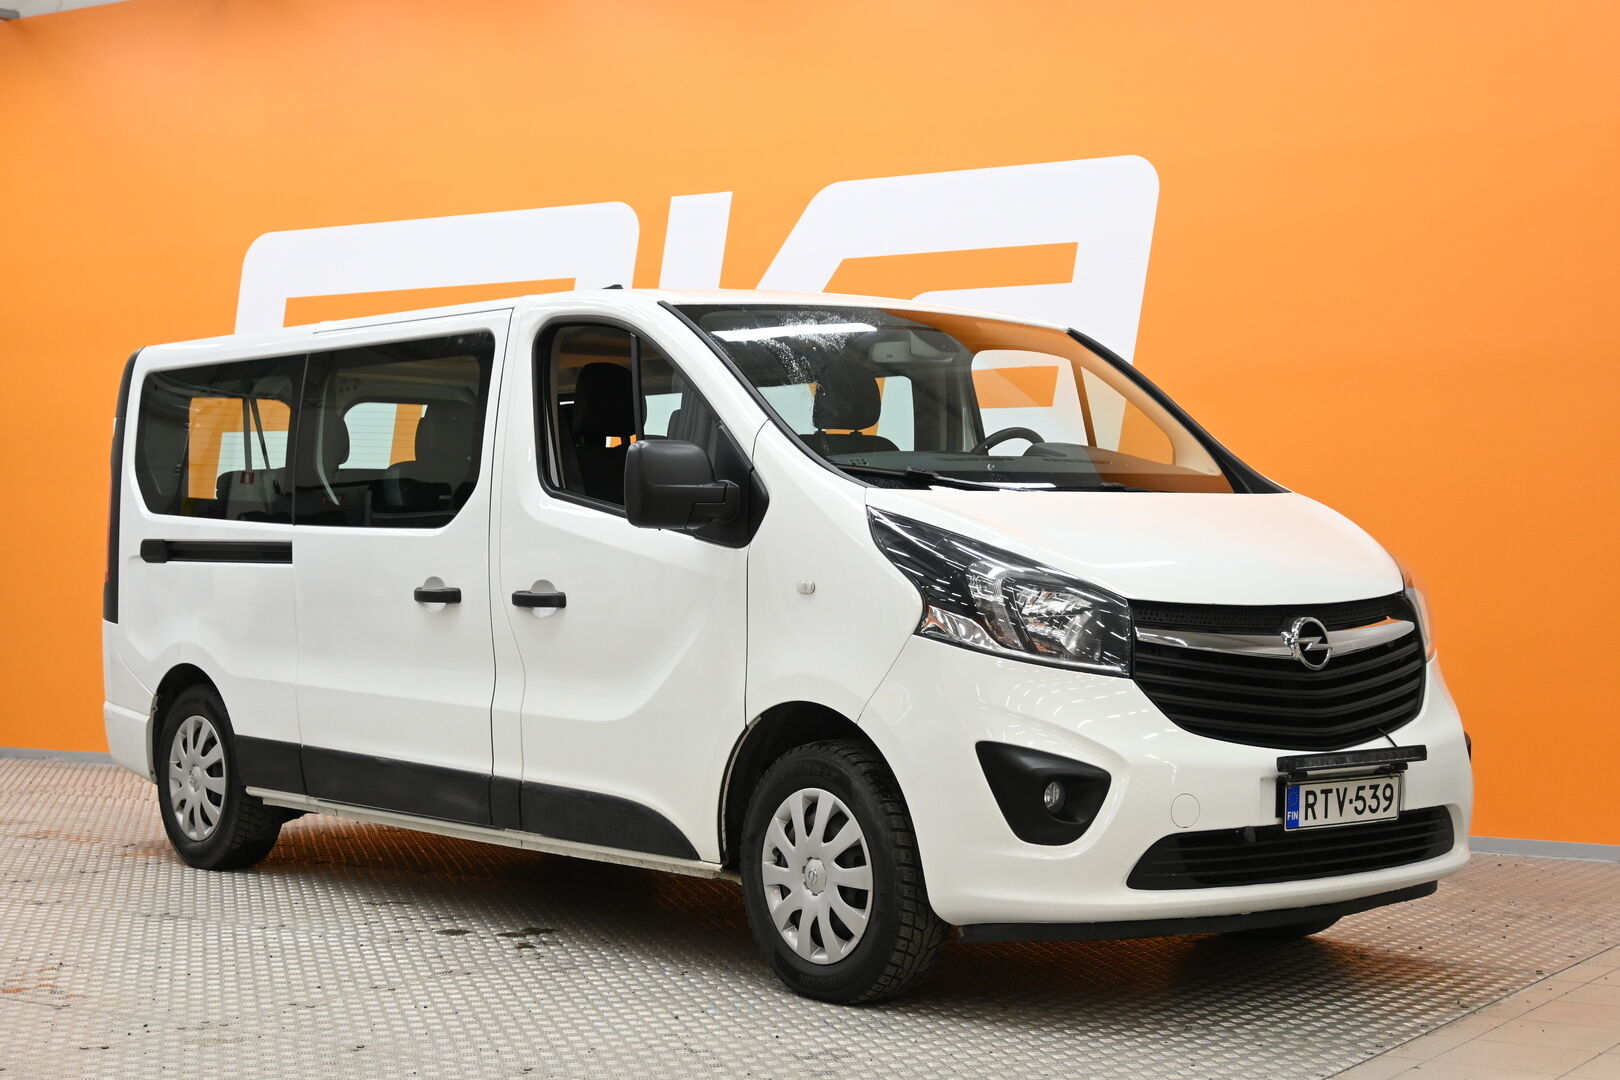 Valkoinen Tila-auto, Opel Vivaro – RTV-539